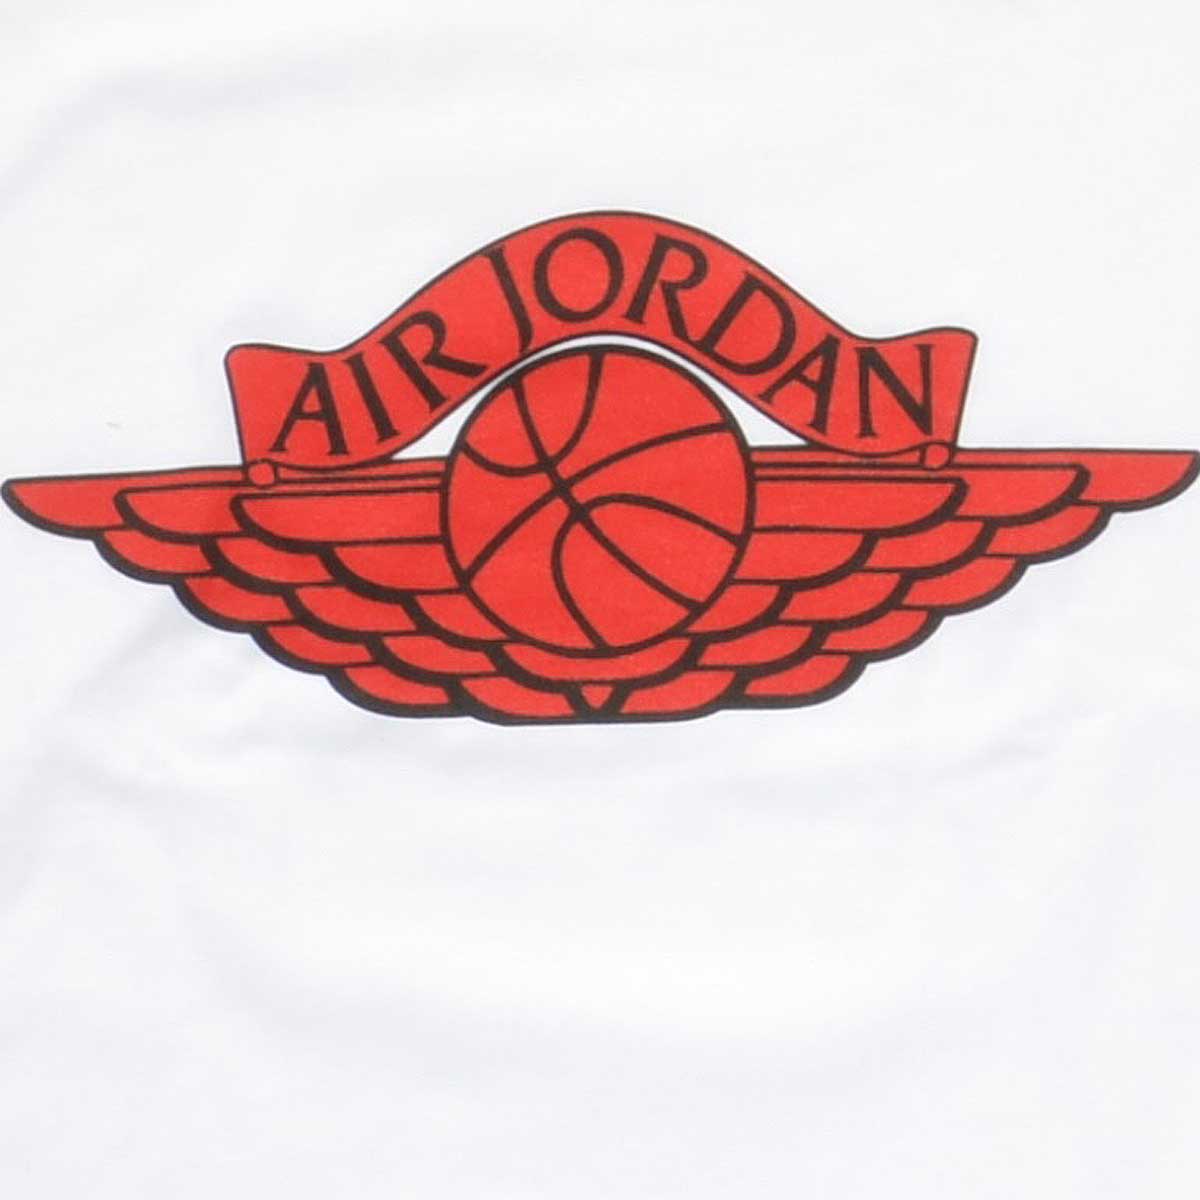 Jordan Wings Logo - Air jordan wings Logos